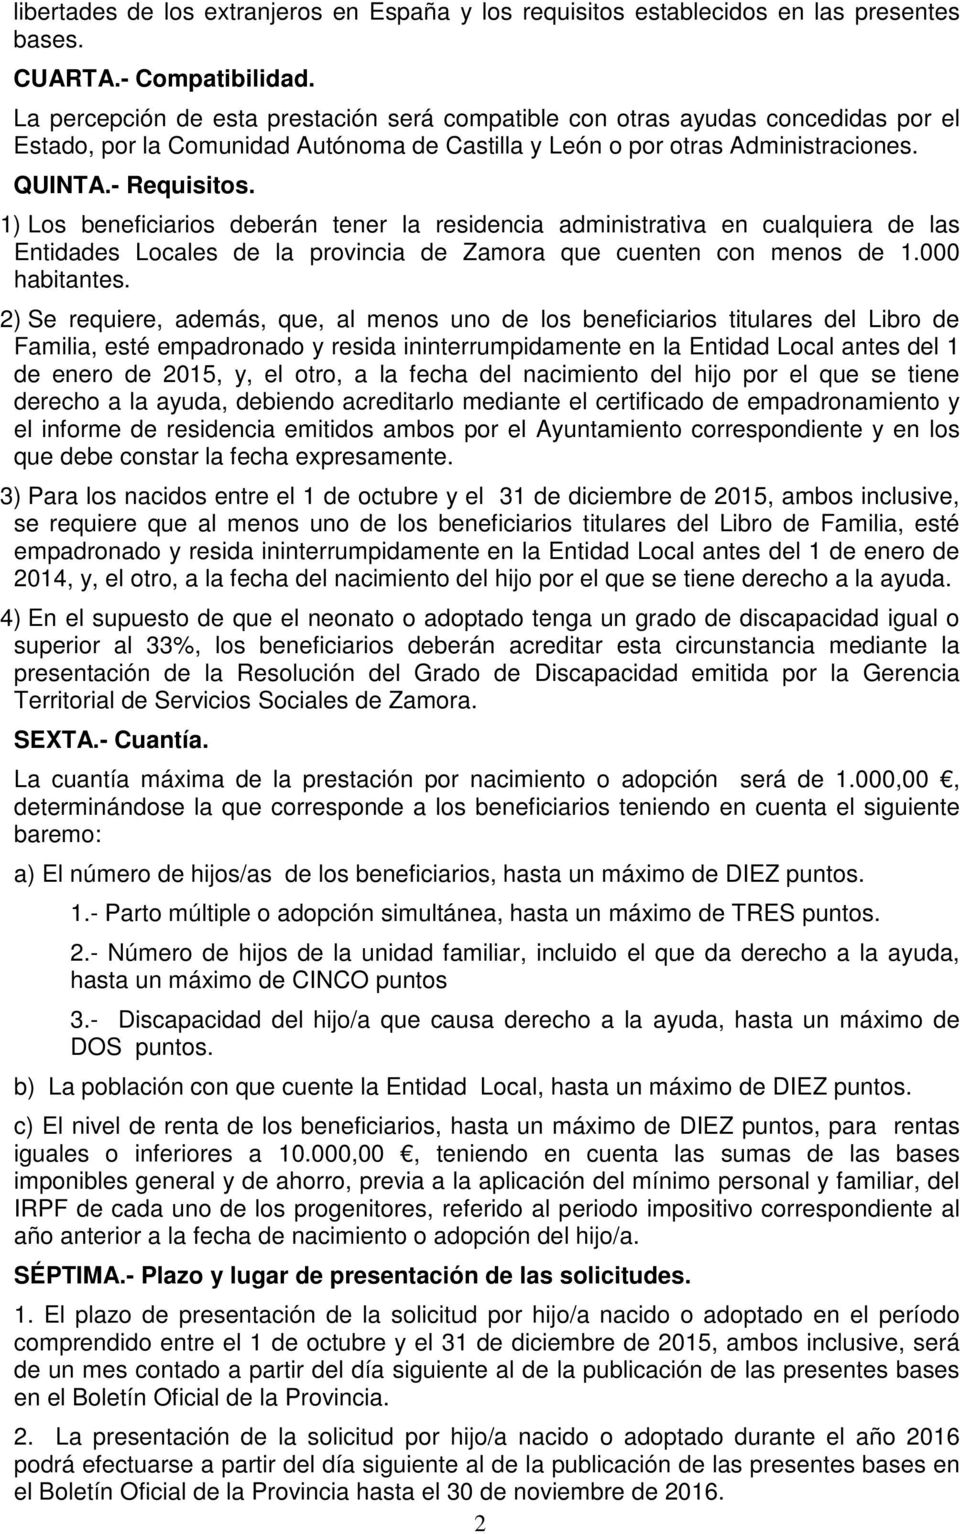 1) Los beneficiarios deberán tener la residencia administrativa en cualquiera de las Entidades Locales de la provincia de Zamora que cuenten con menos de 1.000 habitantes.